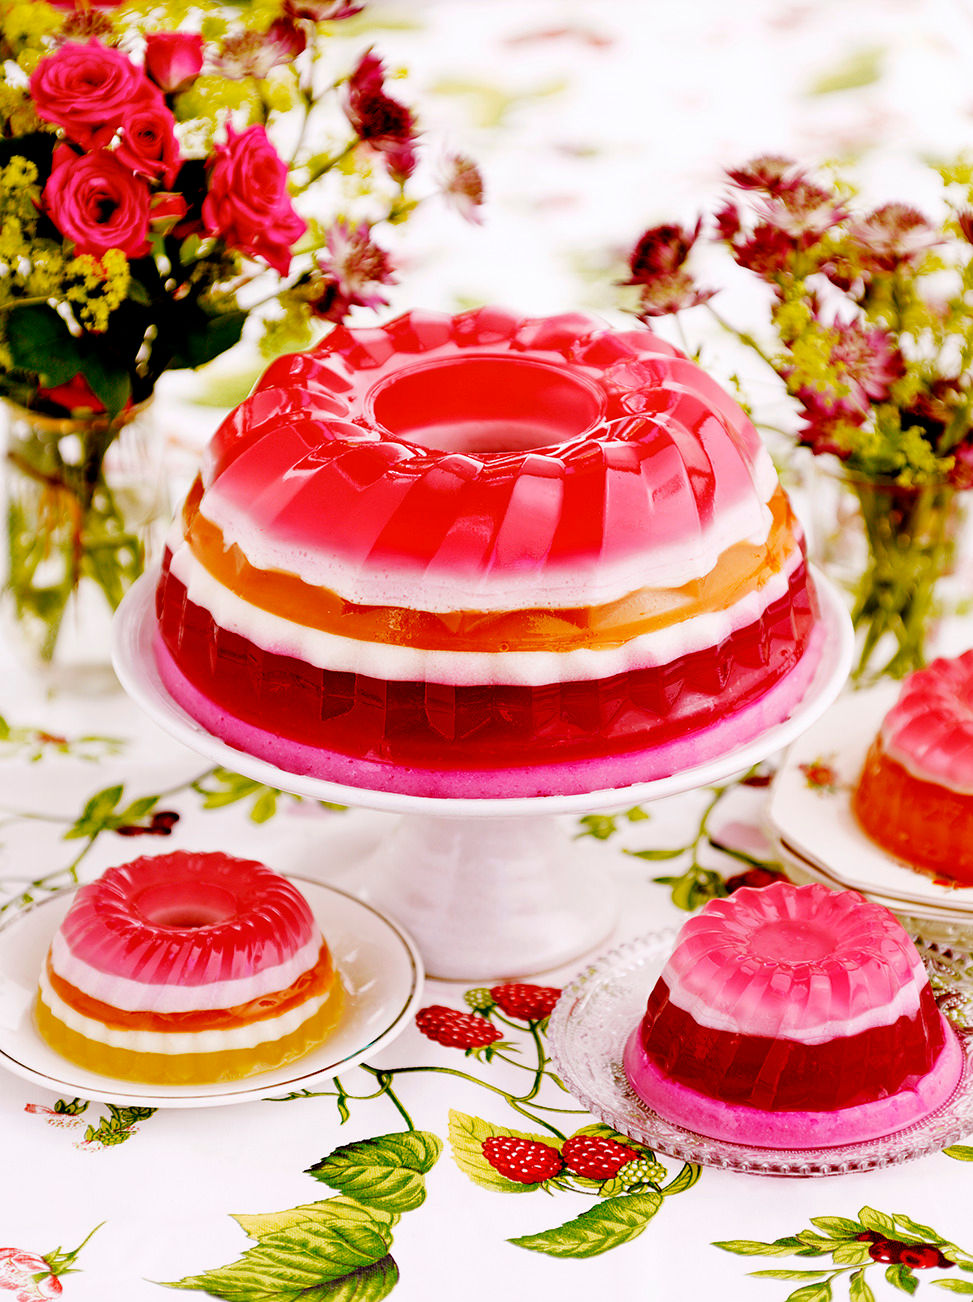 Agar agar jelly fruit cake | Birthday Bike Cake, Food & Drinks, Homemade  Bakes on Carousell